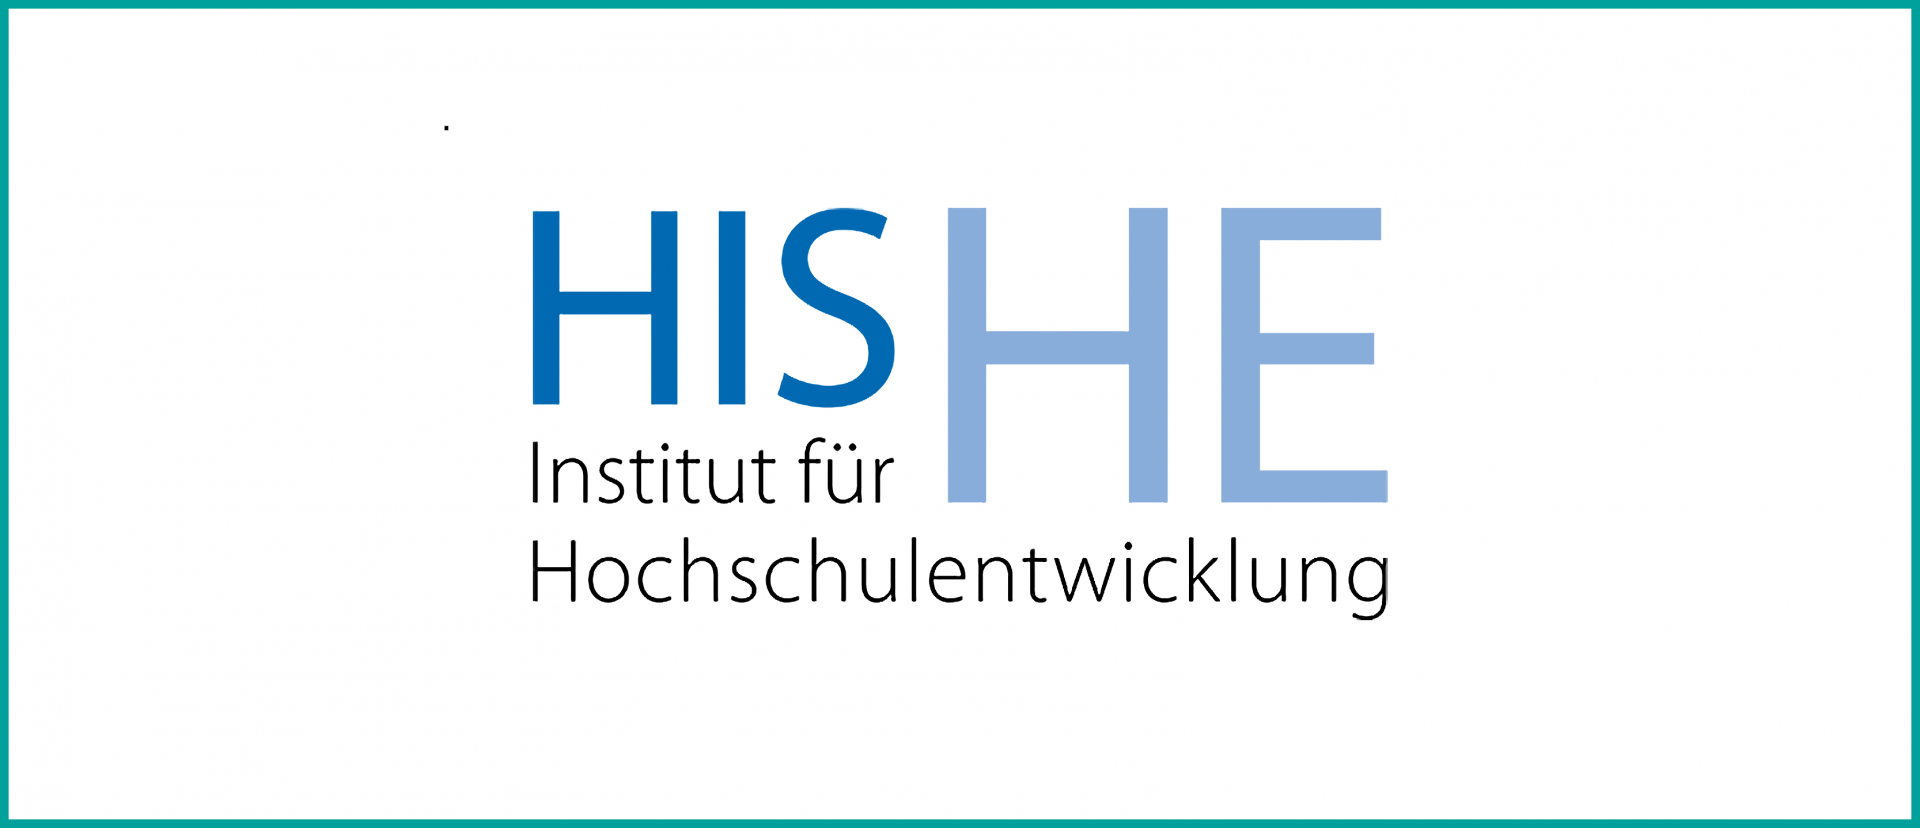 his_institut_fuer_hochschulentwicklung